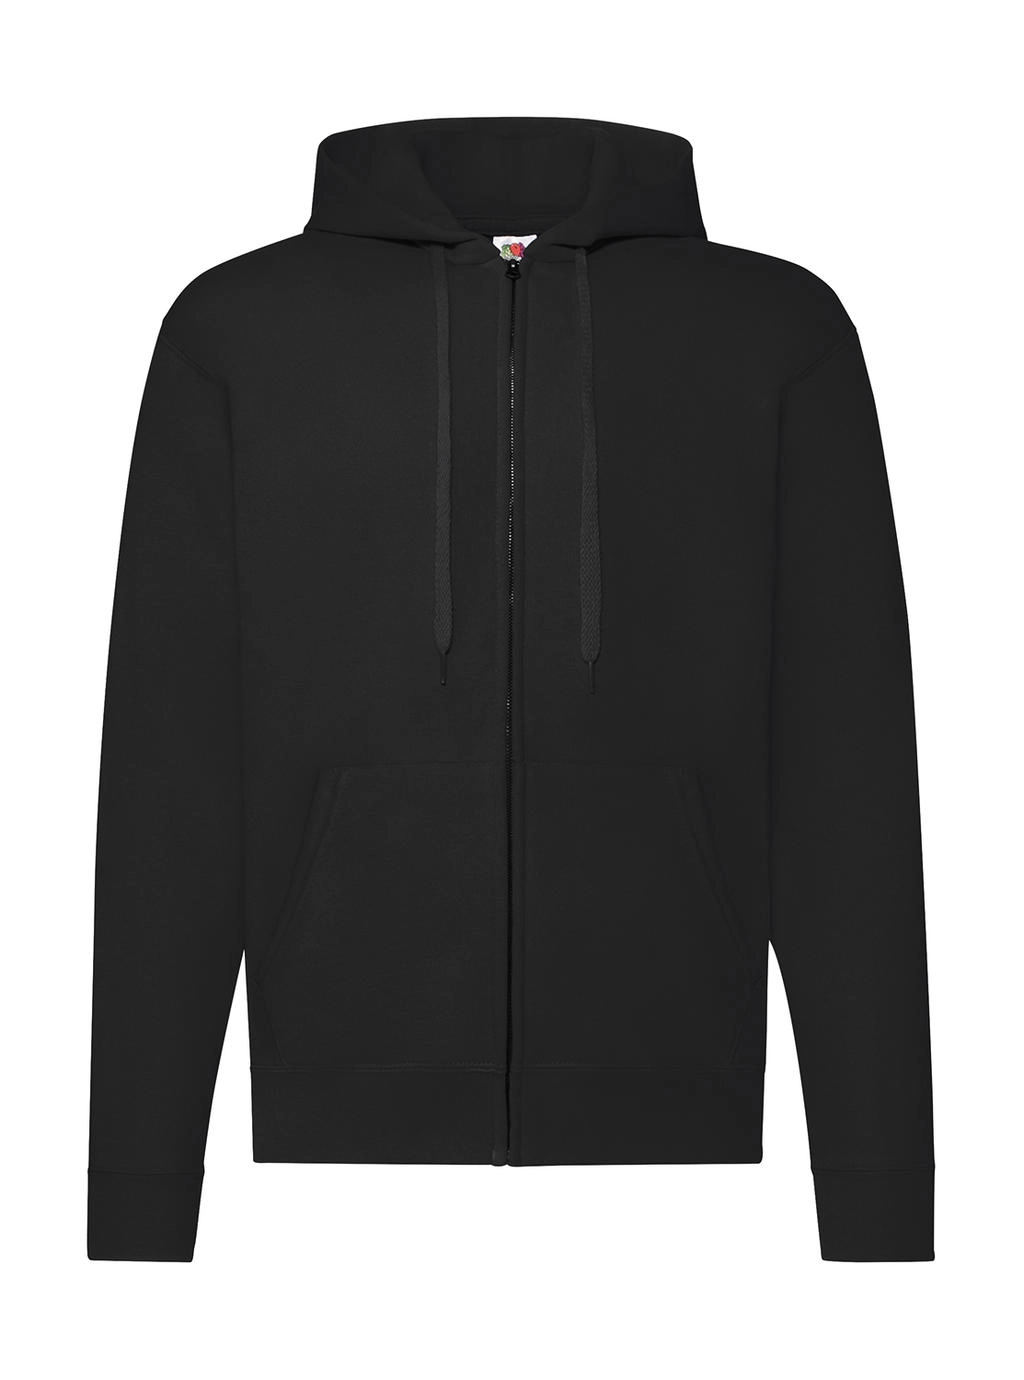 Classic Hooded Sweat Jacket zum Besticken und Bedrucken in der Farbe Black mit Ihren Logo, Schriftzug oder Motiv.